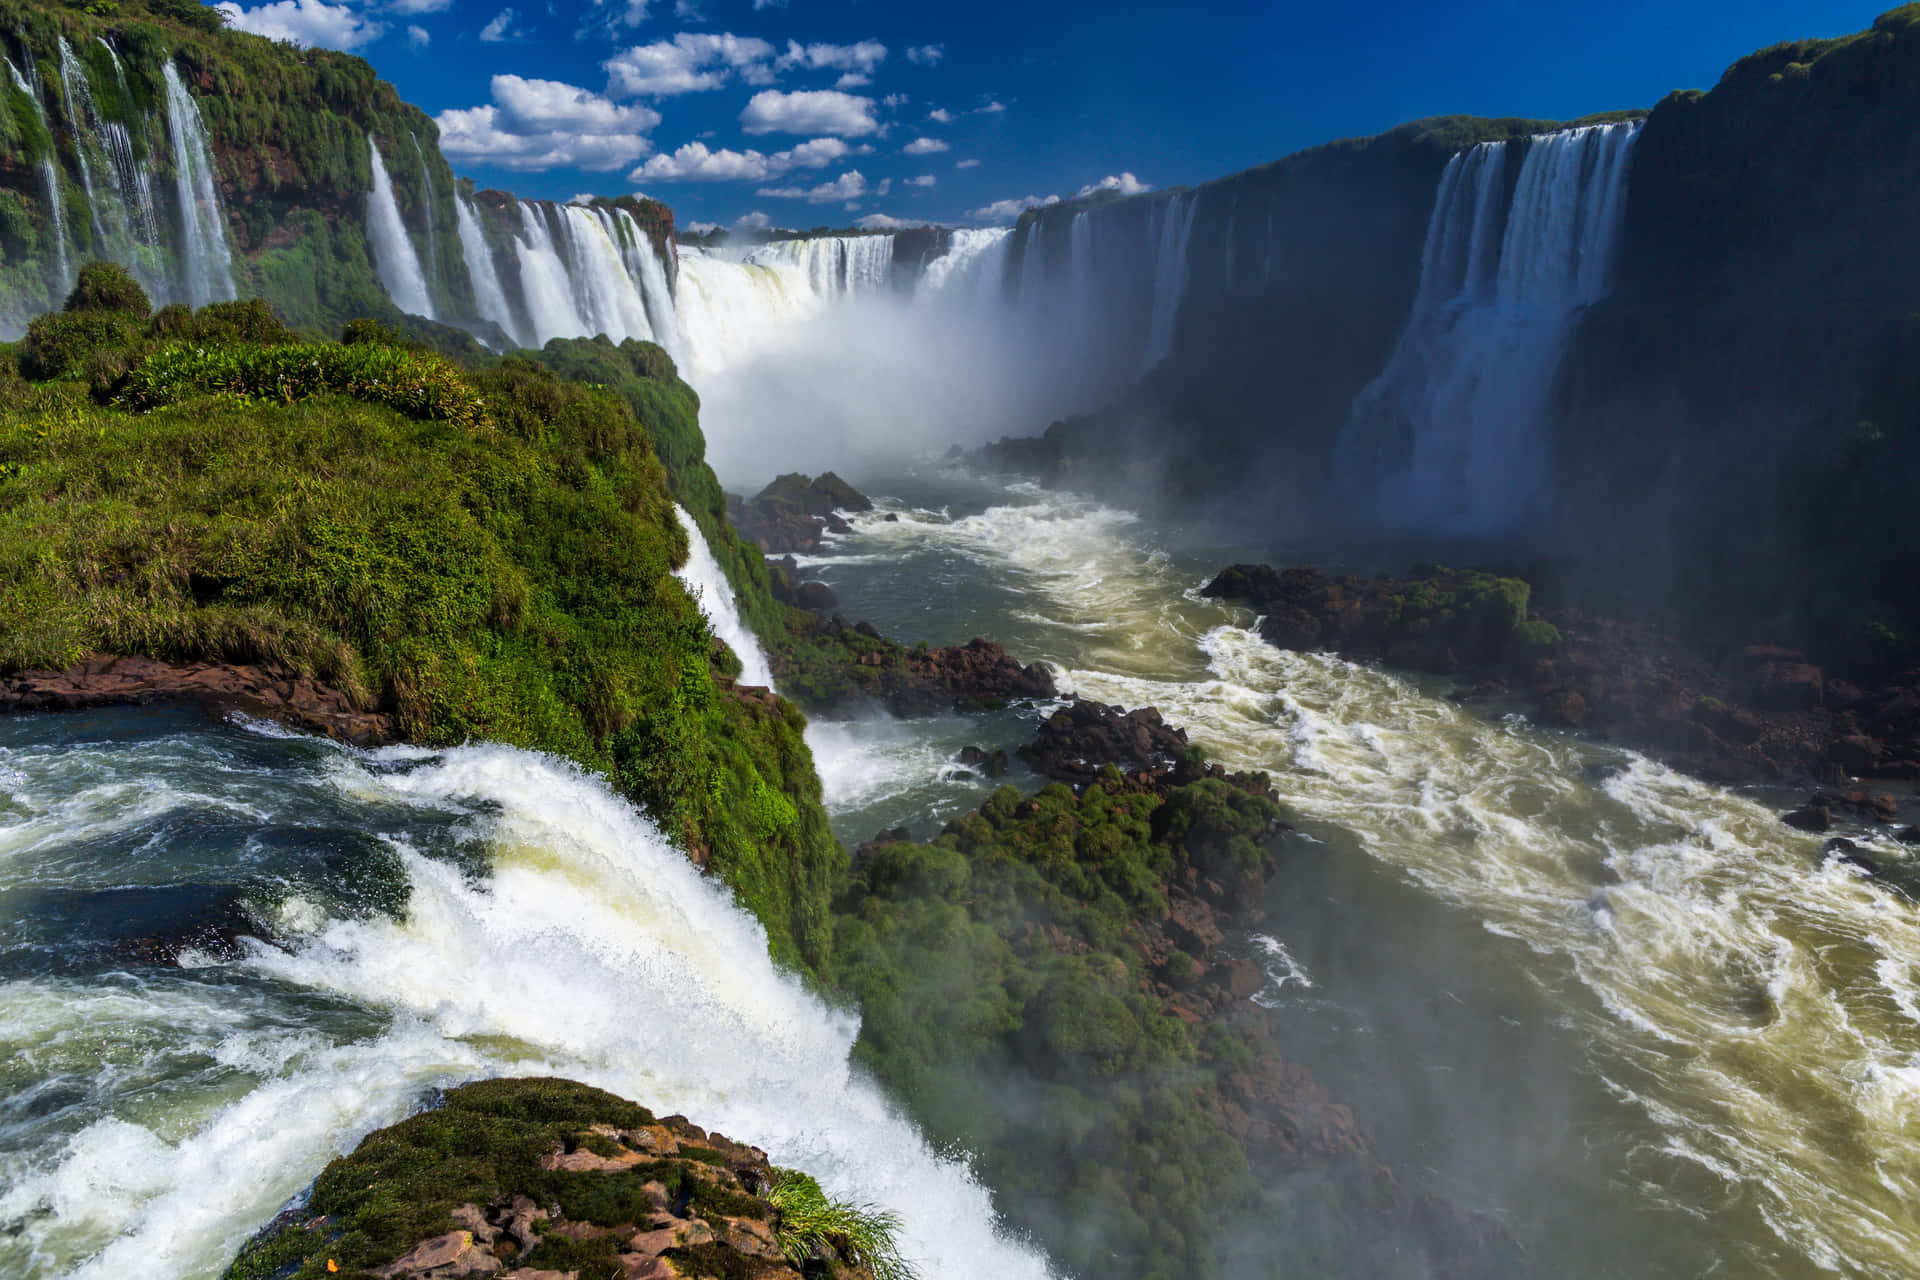 Iguazufalls - Iguacu River: Iguazu Fallen - Iguacu Floden Wallpaper